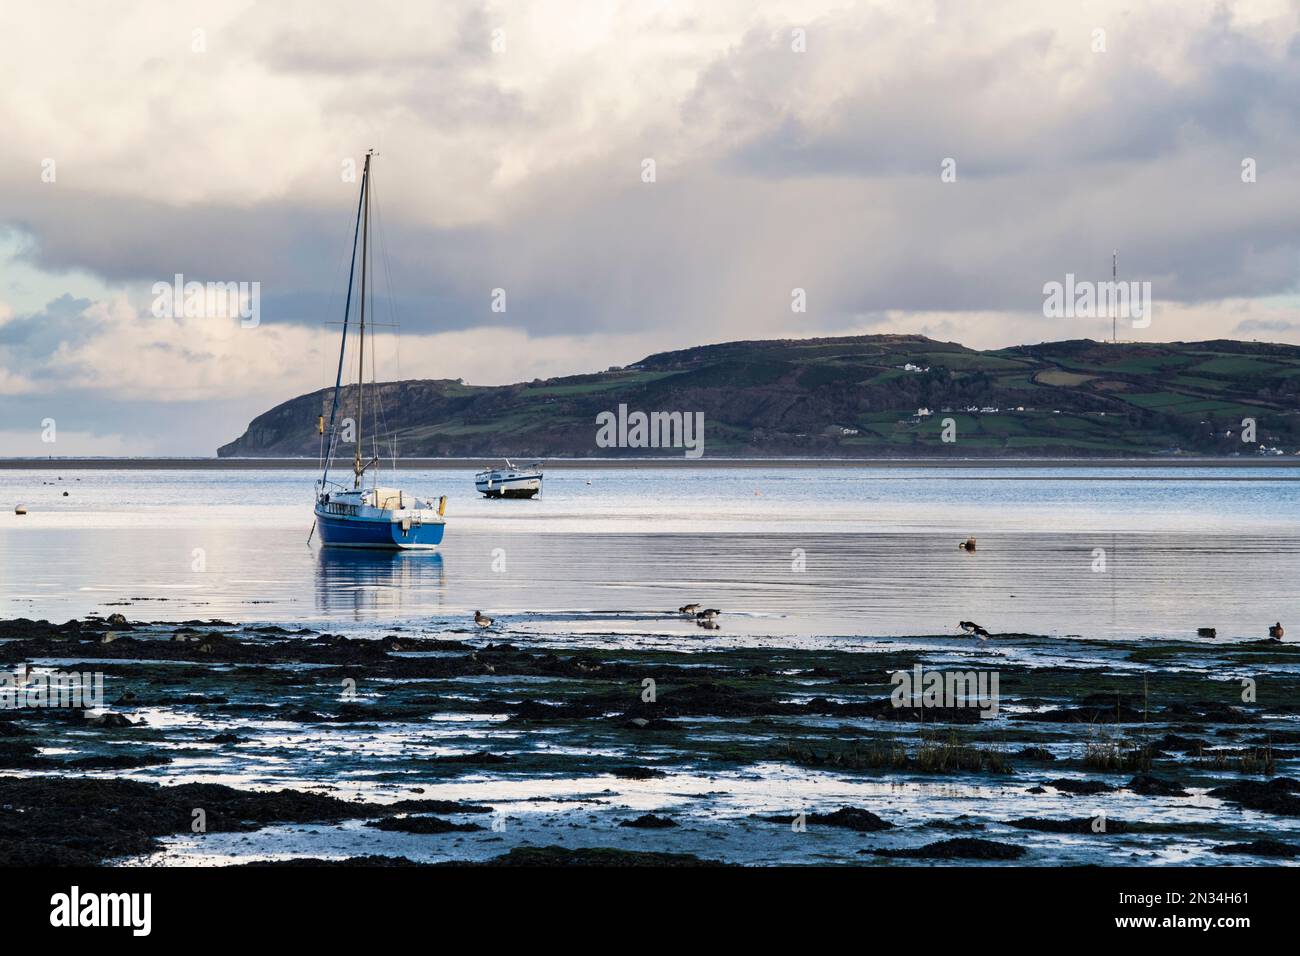 Les canards de Wigeon s'enlisent dans la boue avant la marée entrante dans la baie de Red Wharf (Traeth Coch), Benllech, île d'Anglesey (Ynys mon), pays de Galles, Royaume-Uni, Grande-Bretagne Banque D'Images